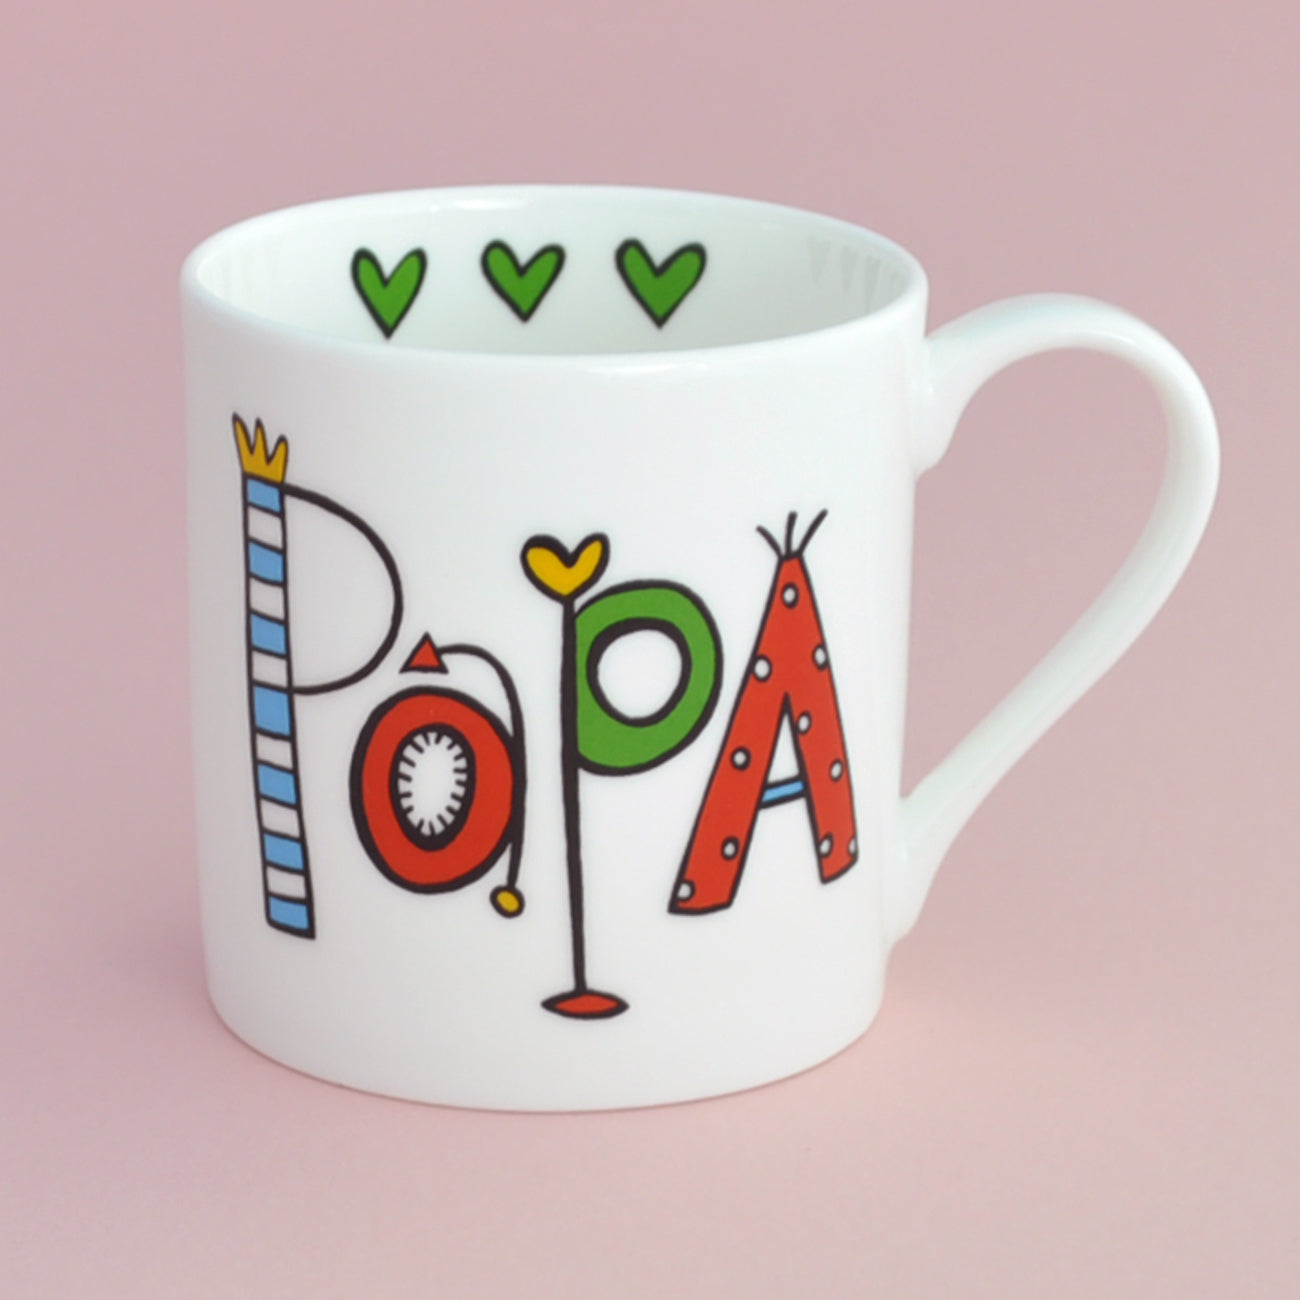 papa china mug